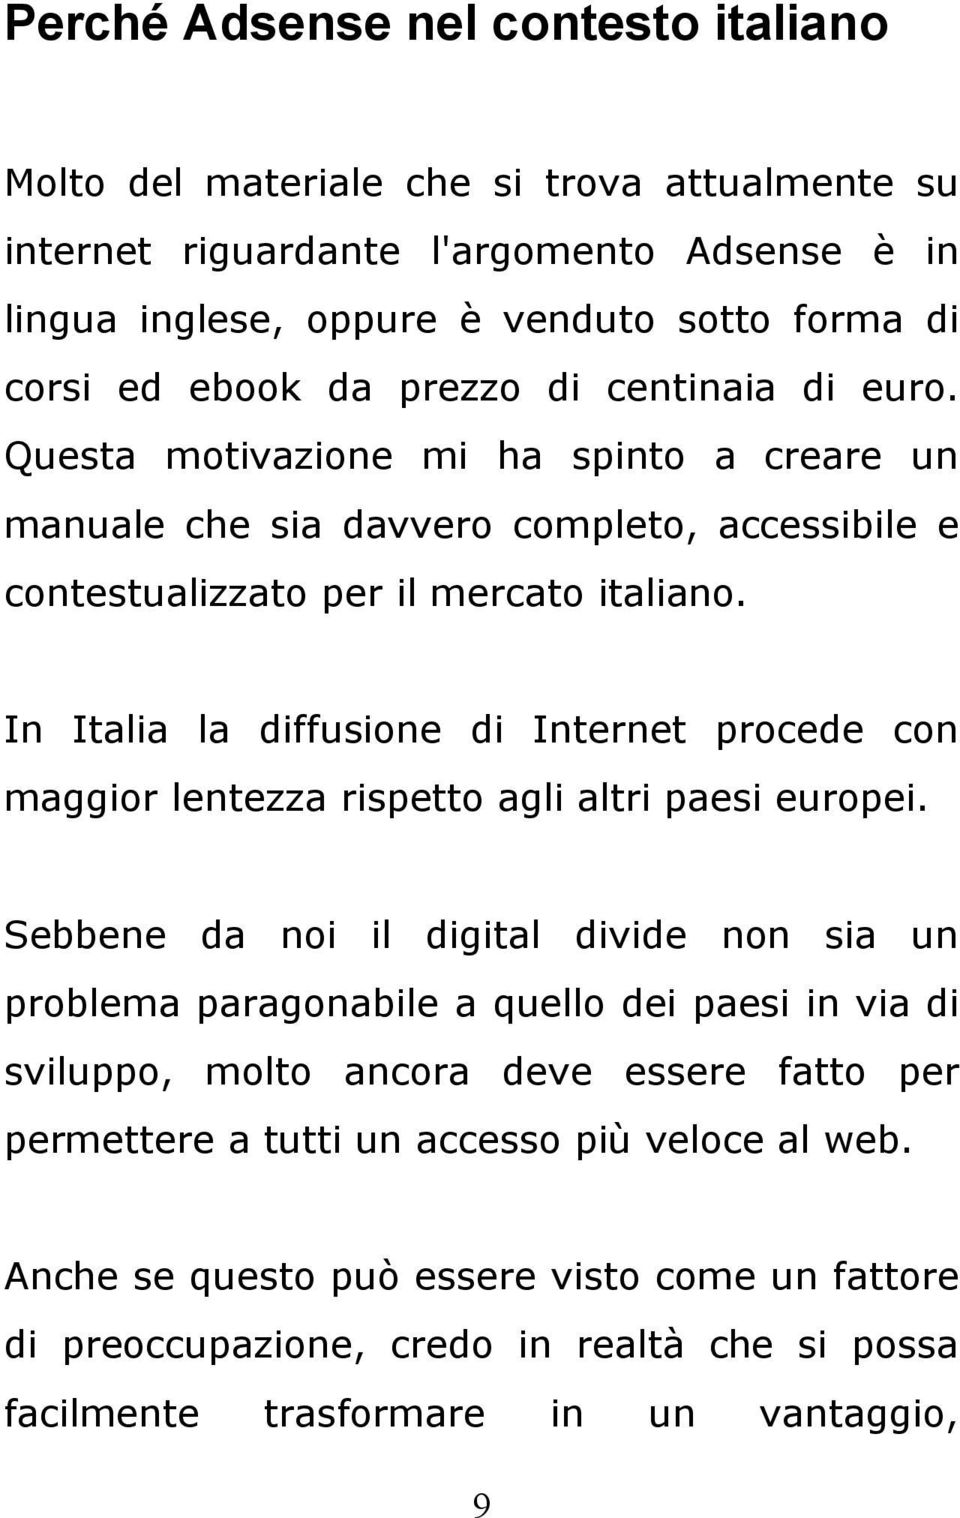 In Italia la diffusione di Internet procede con maggior lentezza rispetto agli altri paesi europei.